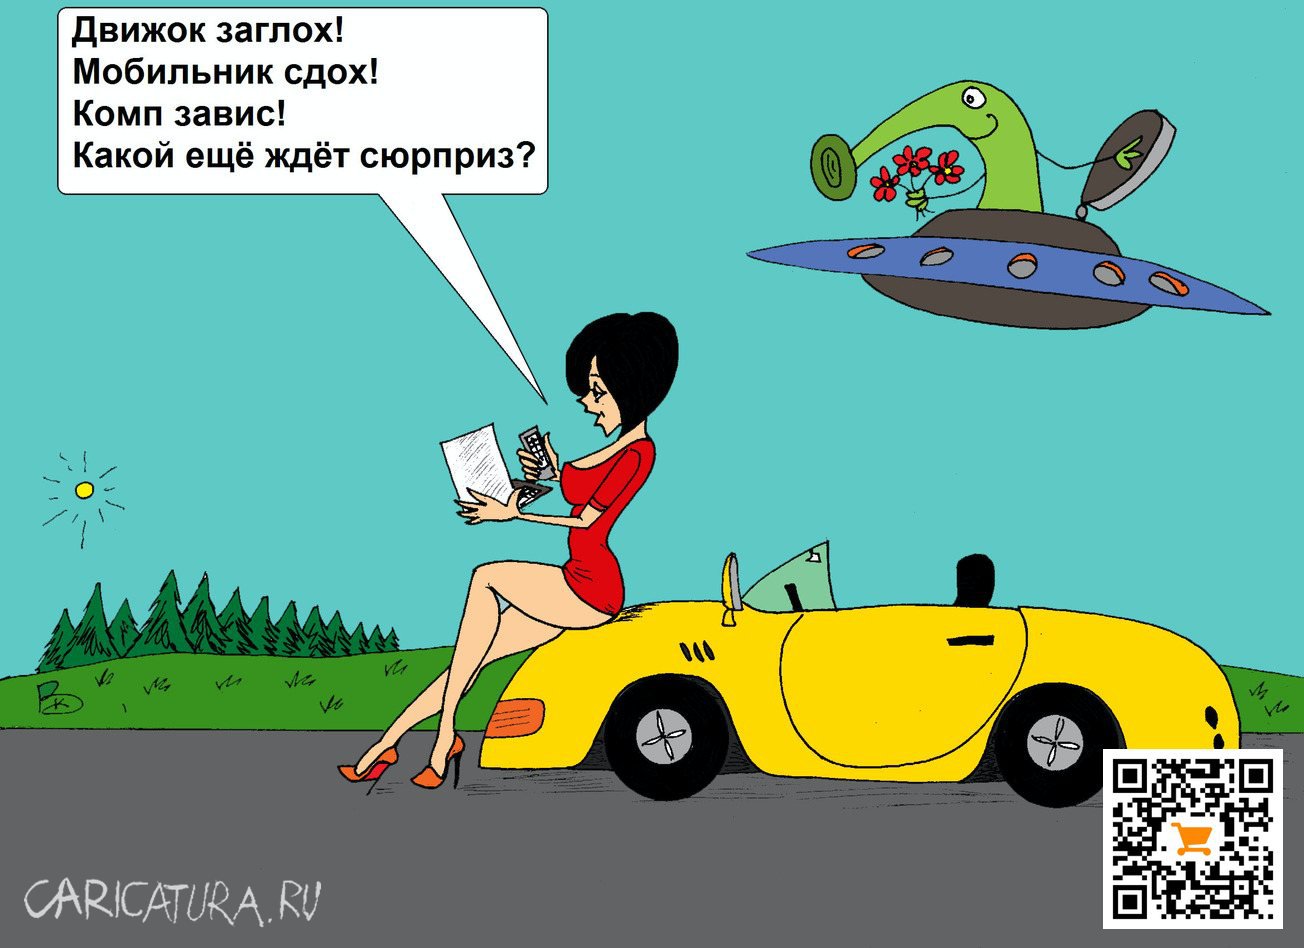 Карикатура "Сюрприз", Валерий Каненков